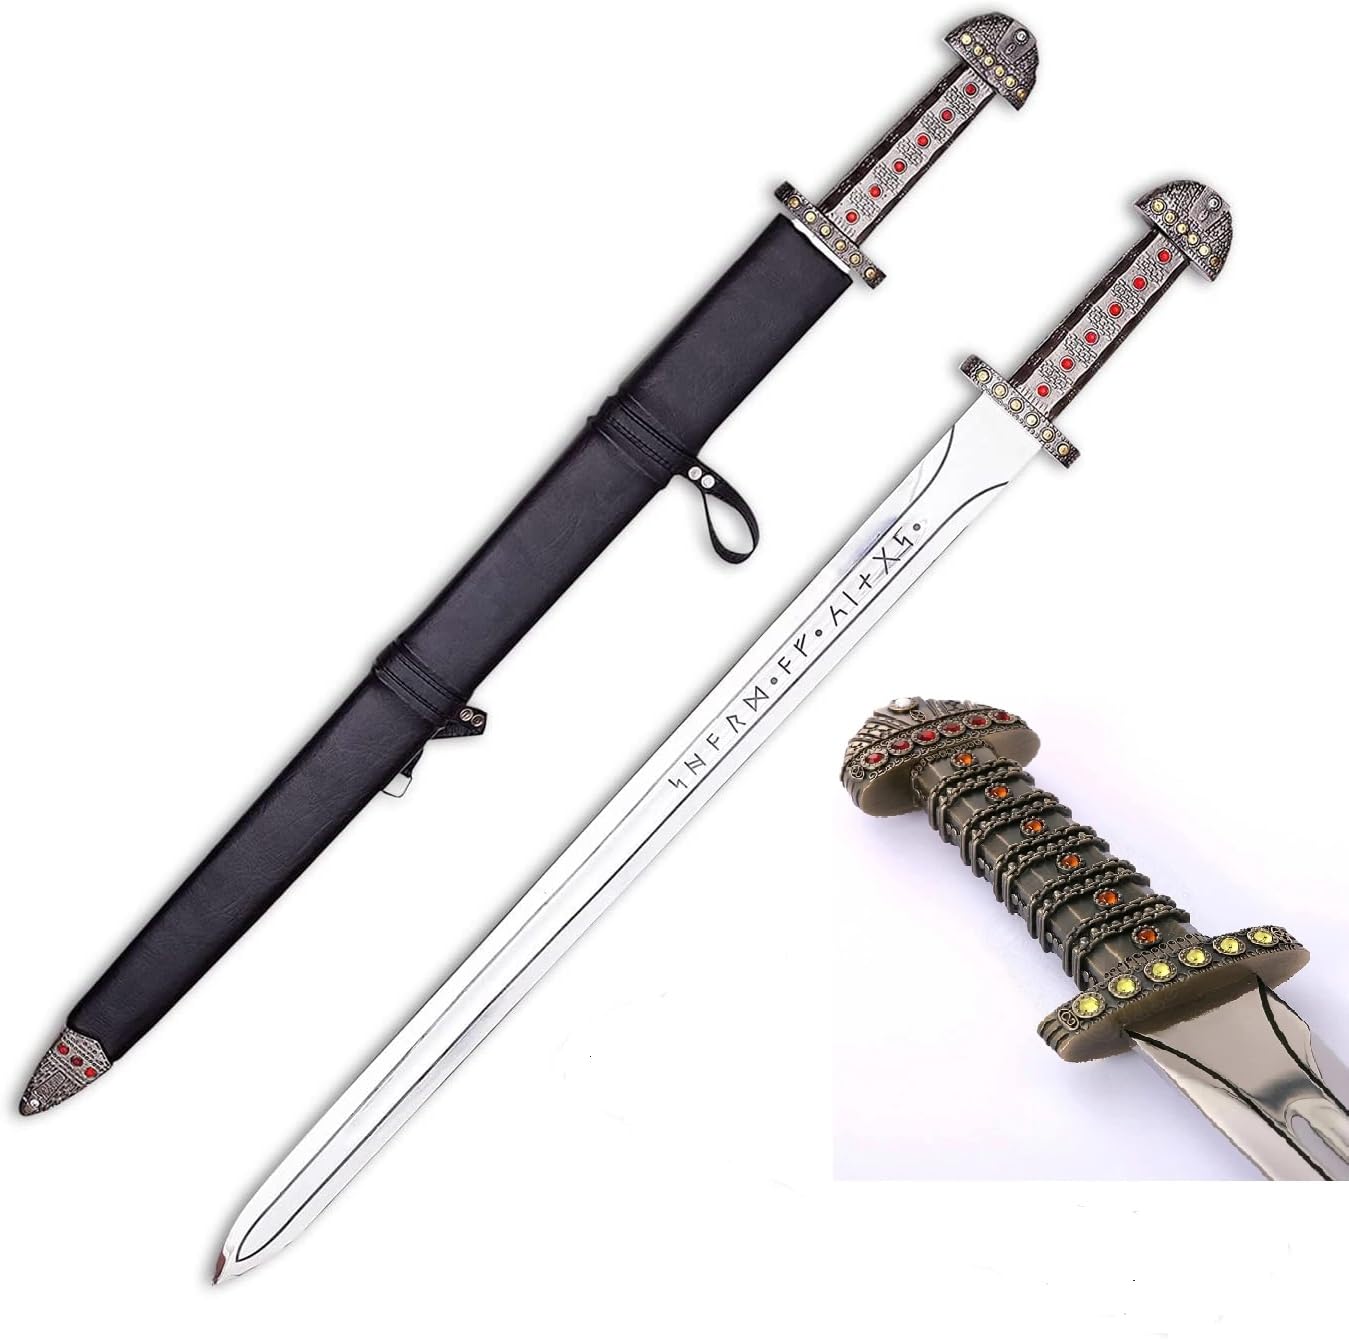  Ragnar Lothbrok Sword & Axe Vikings Sword of Kings